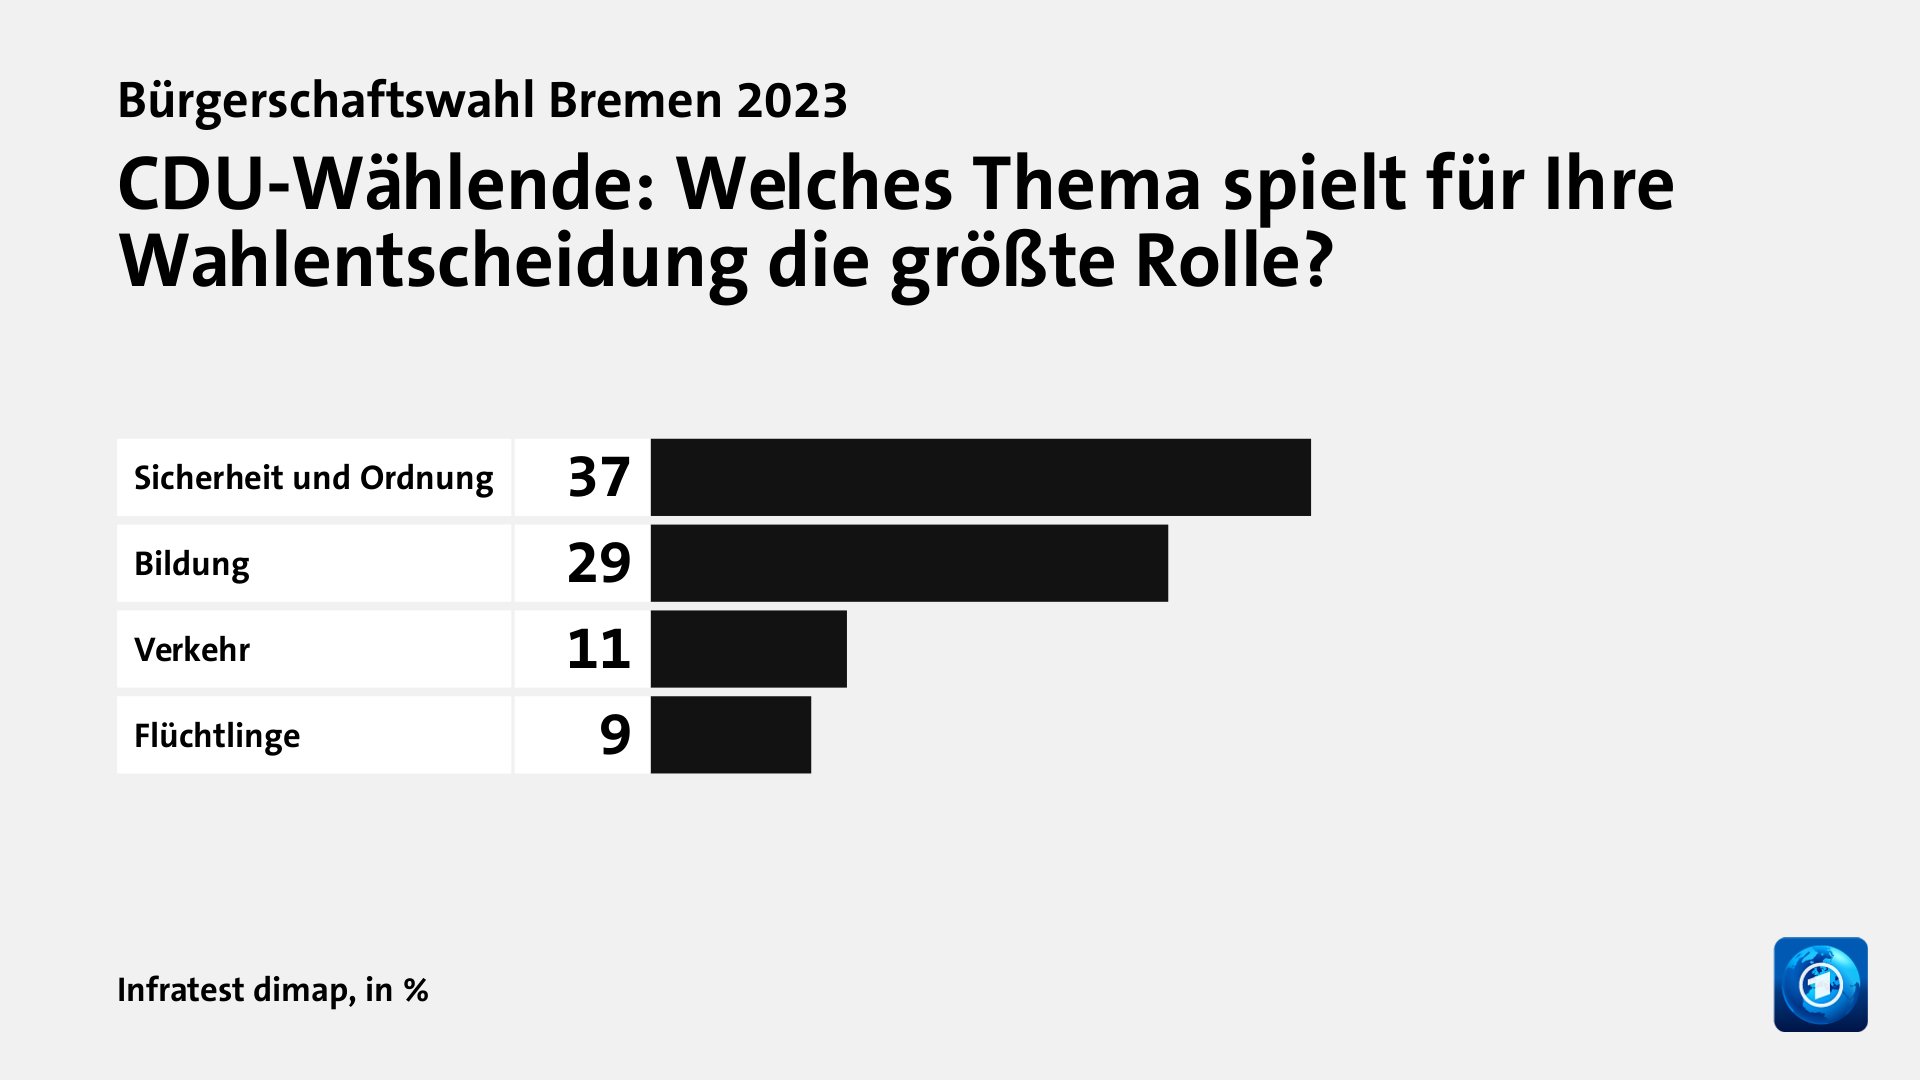 CDU-Wählende: Welches Thema spielt für Ihre Wahlentscheidung die größte Rolle?, in %: Sicherheit und Ordnung  37, Bildung 29, Verkehr 11, Flüchtlinge 9, Quelle: Infratest dimap